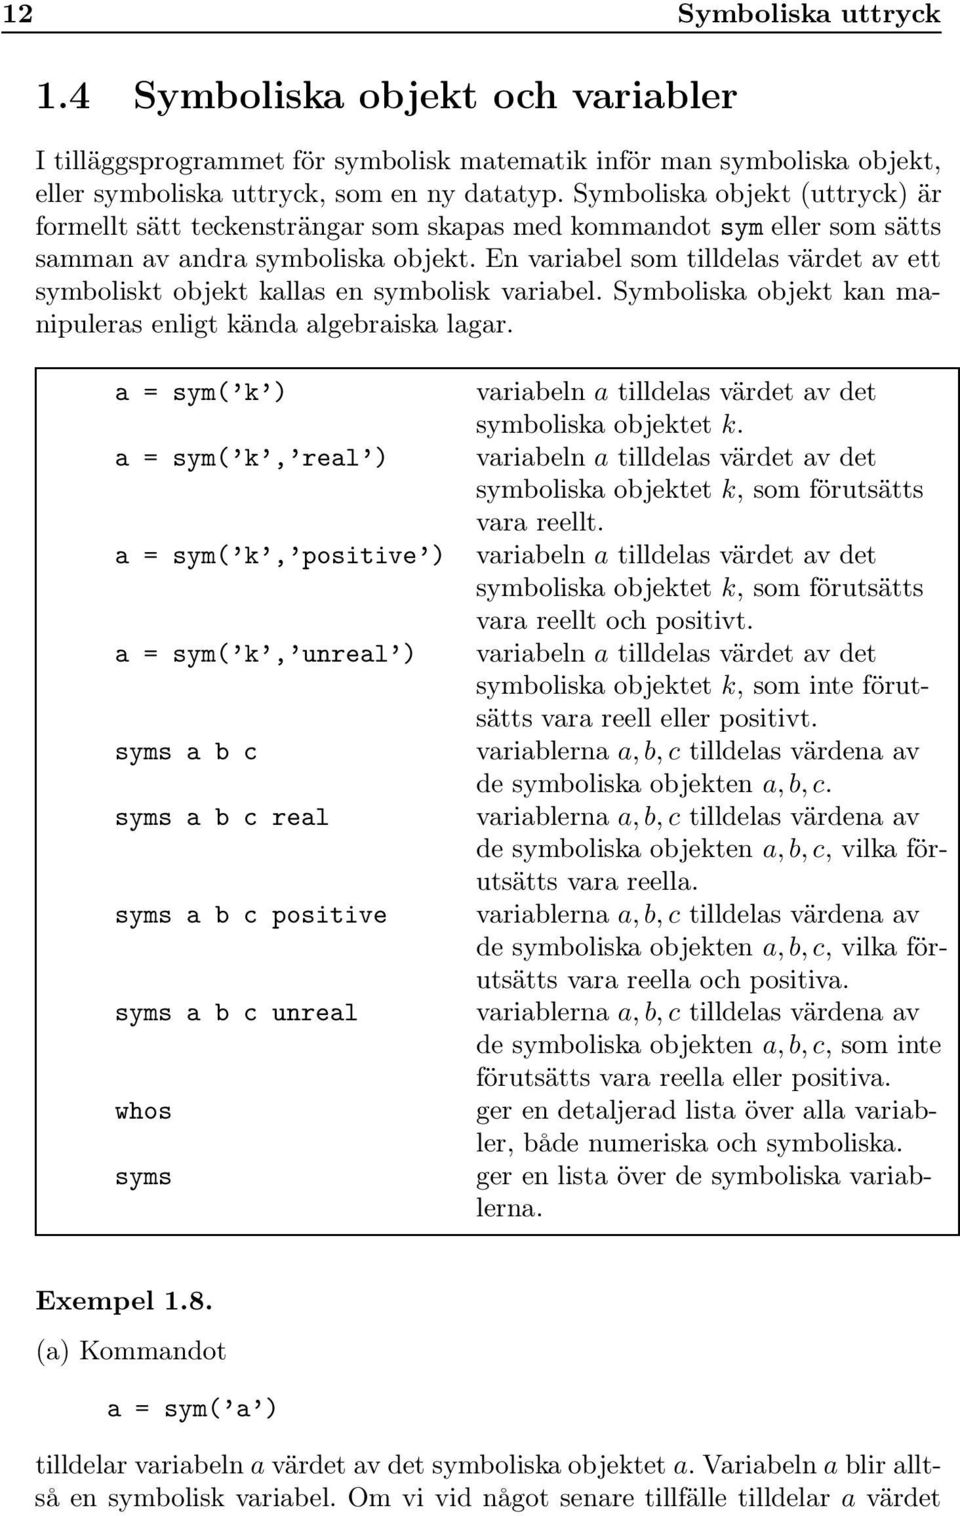 En variabel som tilldelas värdet av ett symboliskt objekt kallas en symbolisk variabel. Symboliska objekt kan manipuleras enligt kända algebraiska lagar.